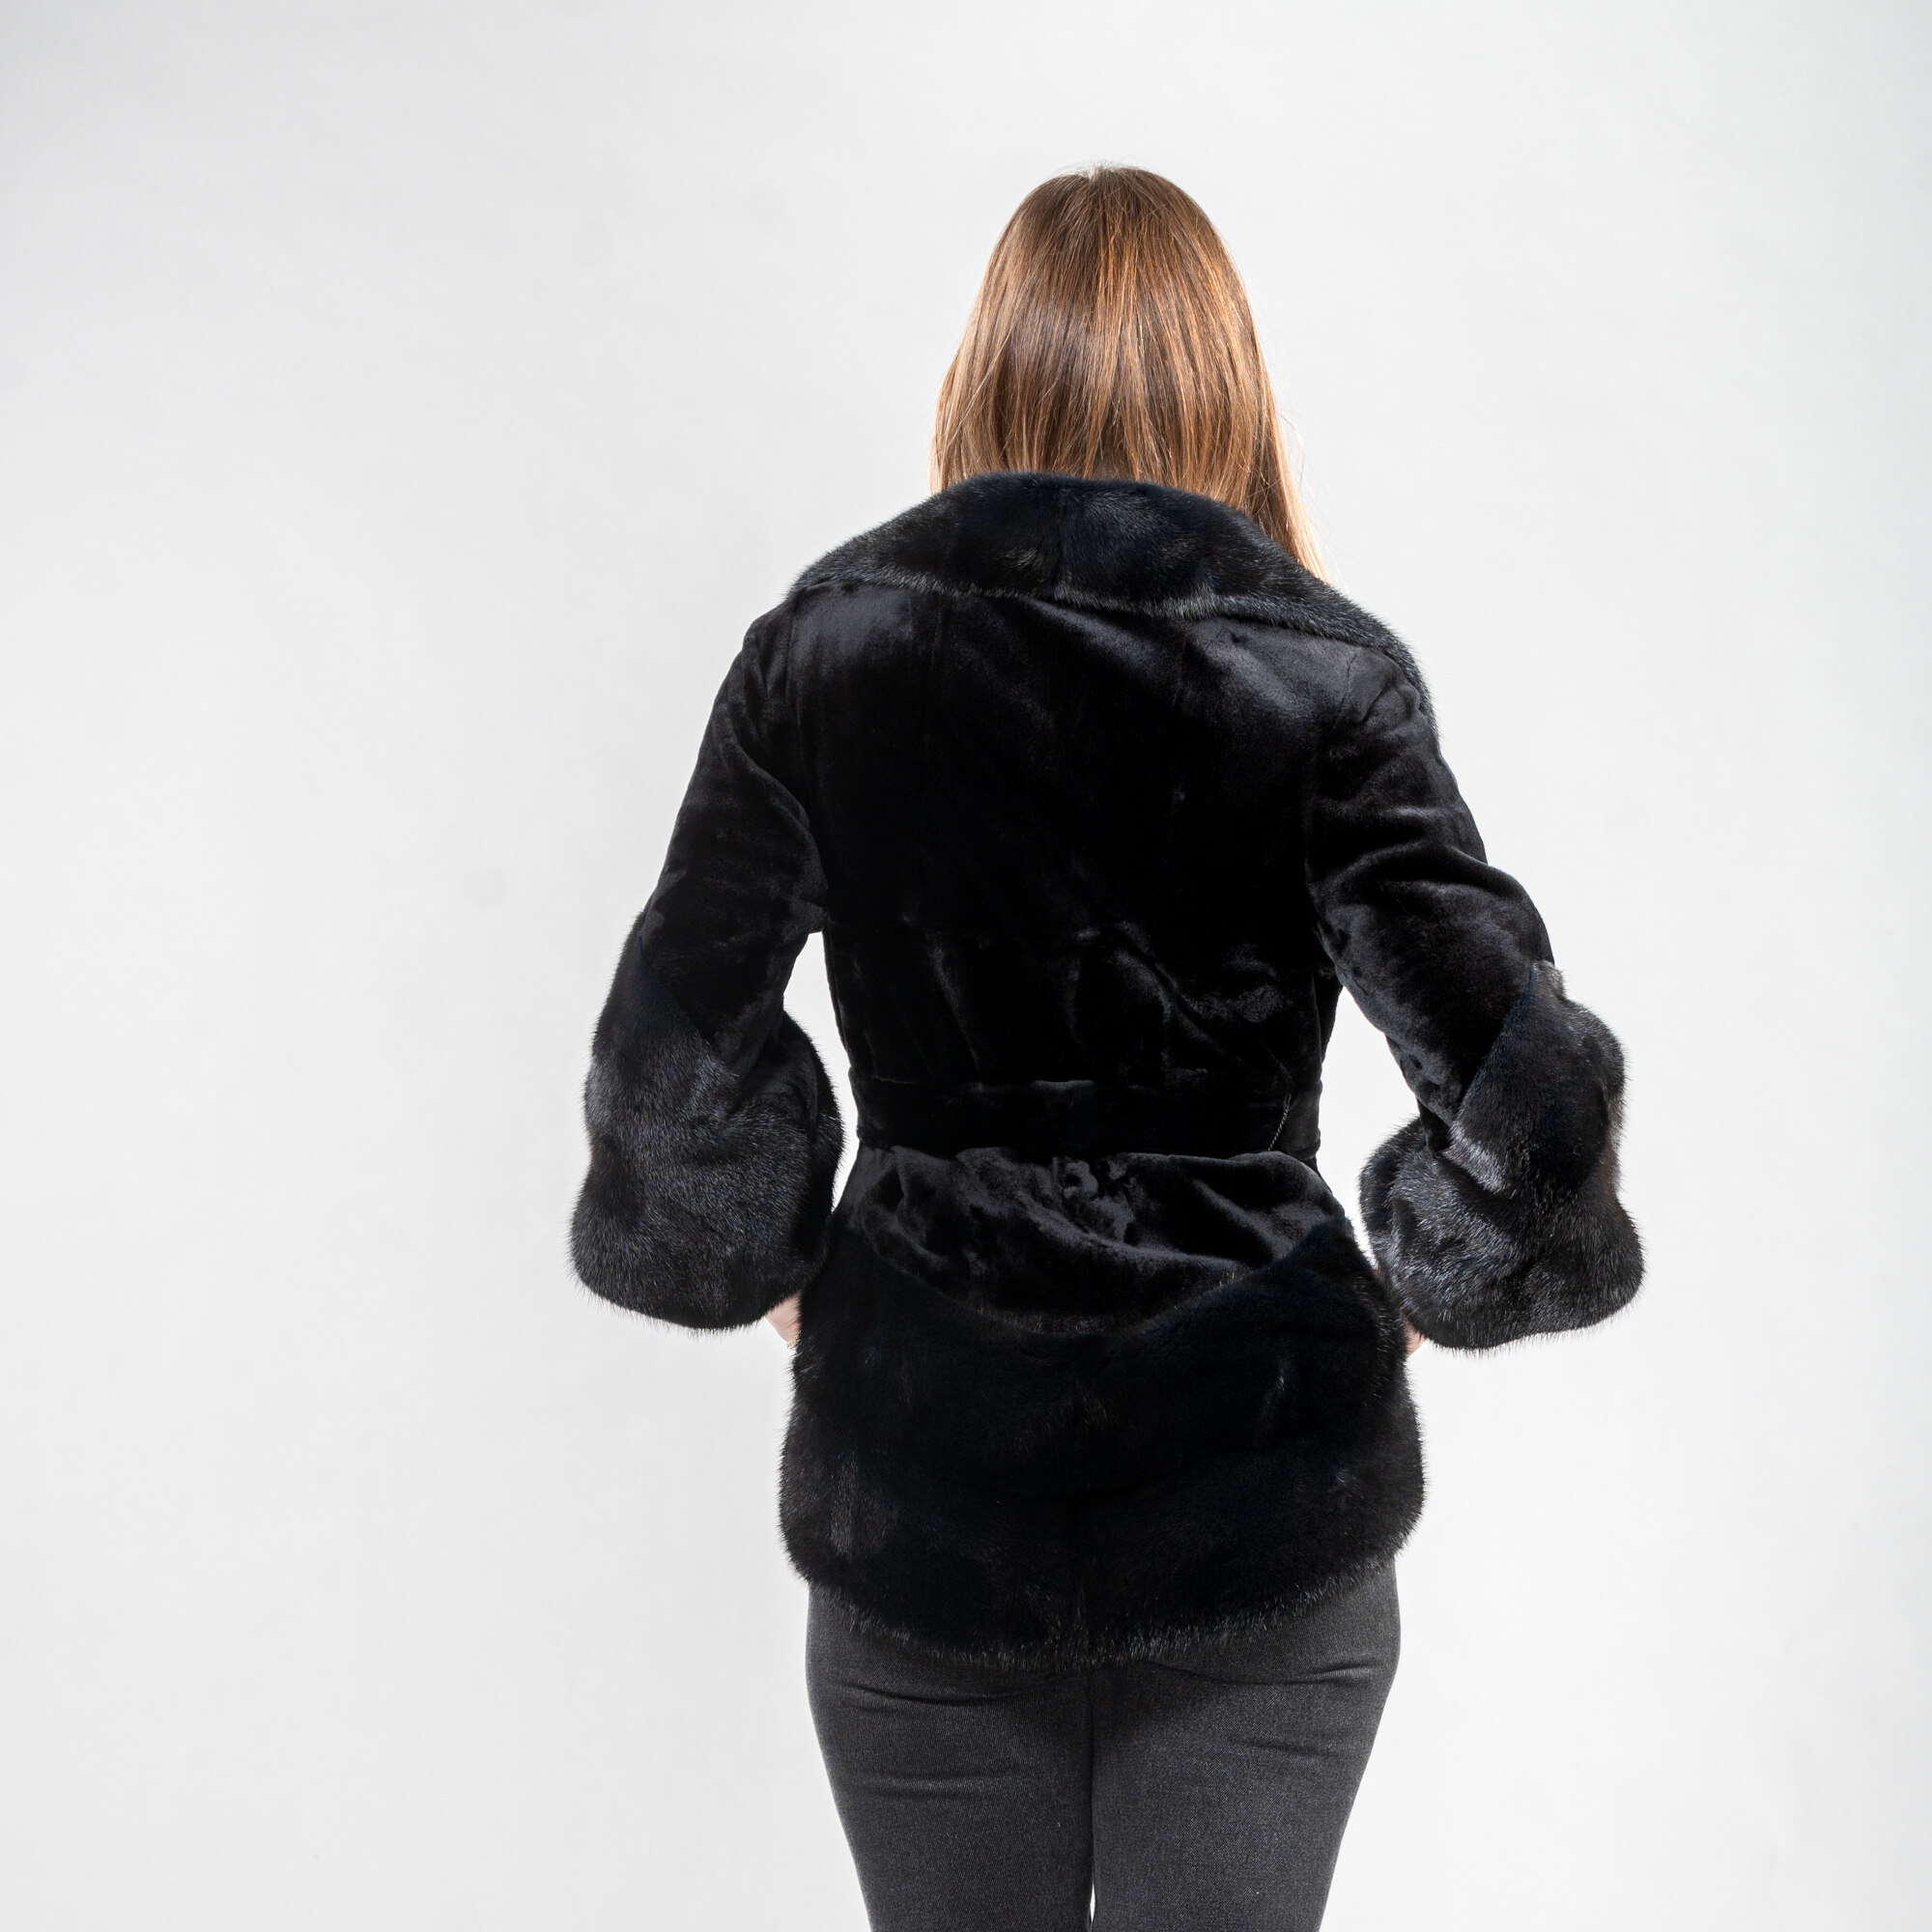 Mink fur belted jacket in black color